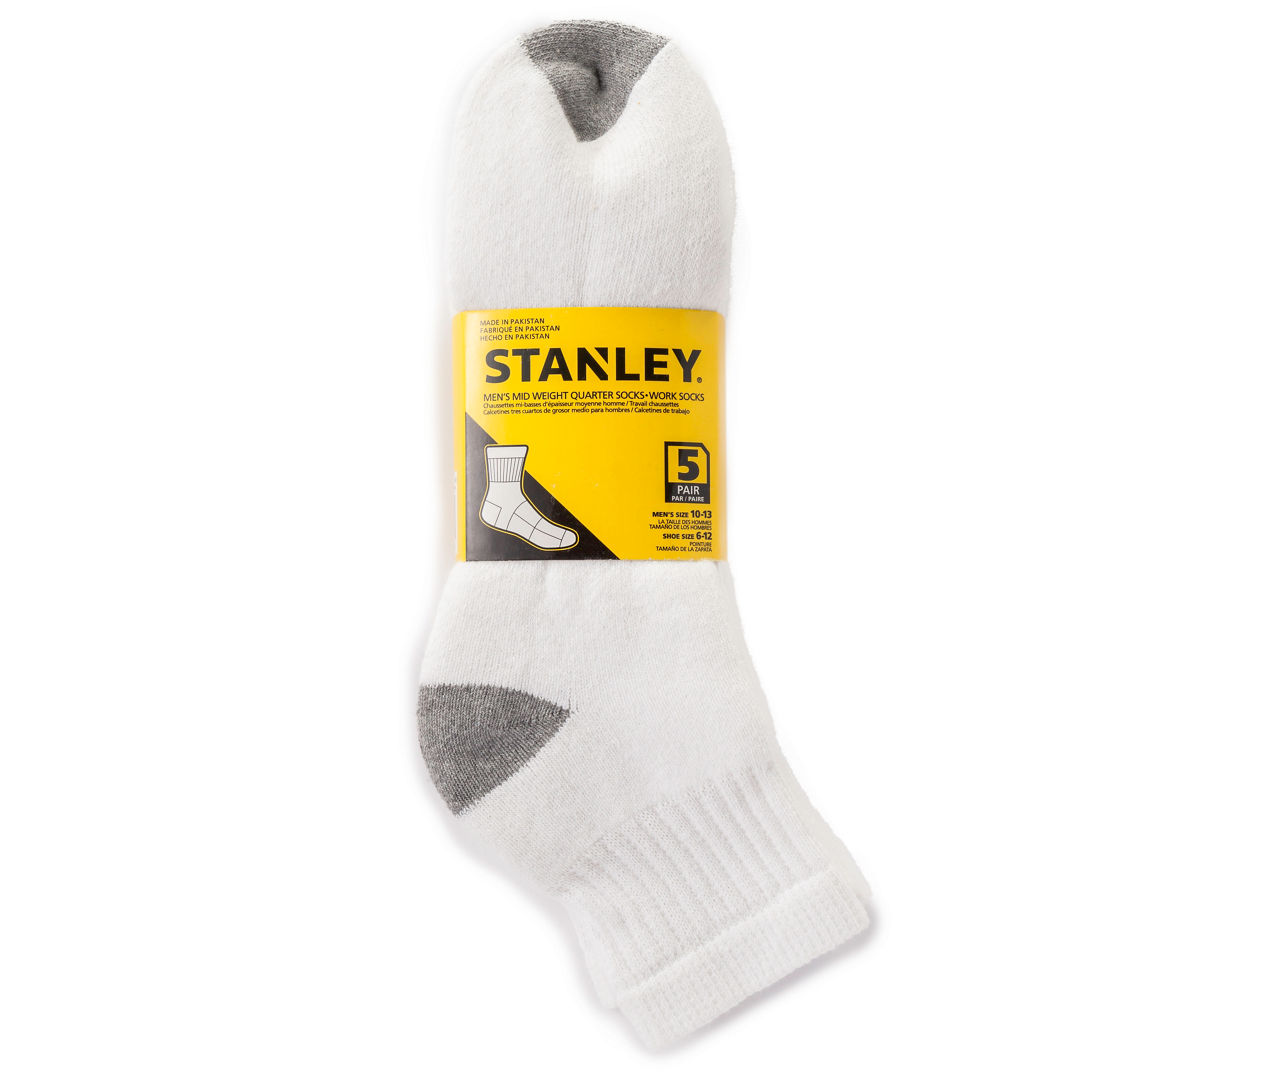 Socks The Office Stanley Stuff for Male Flexible Print Socks All